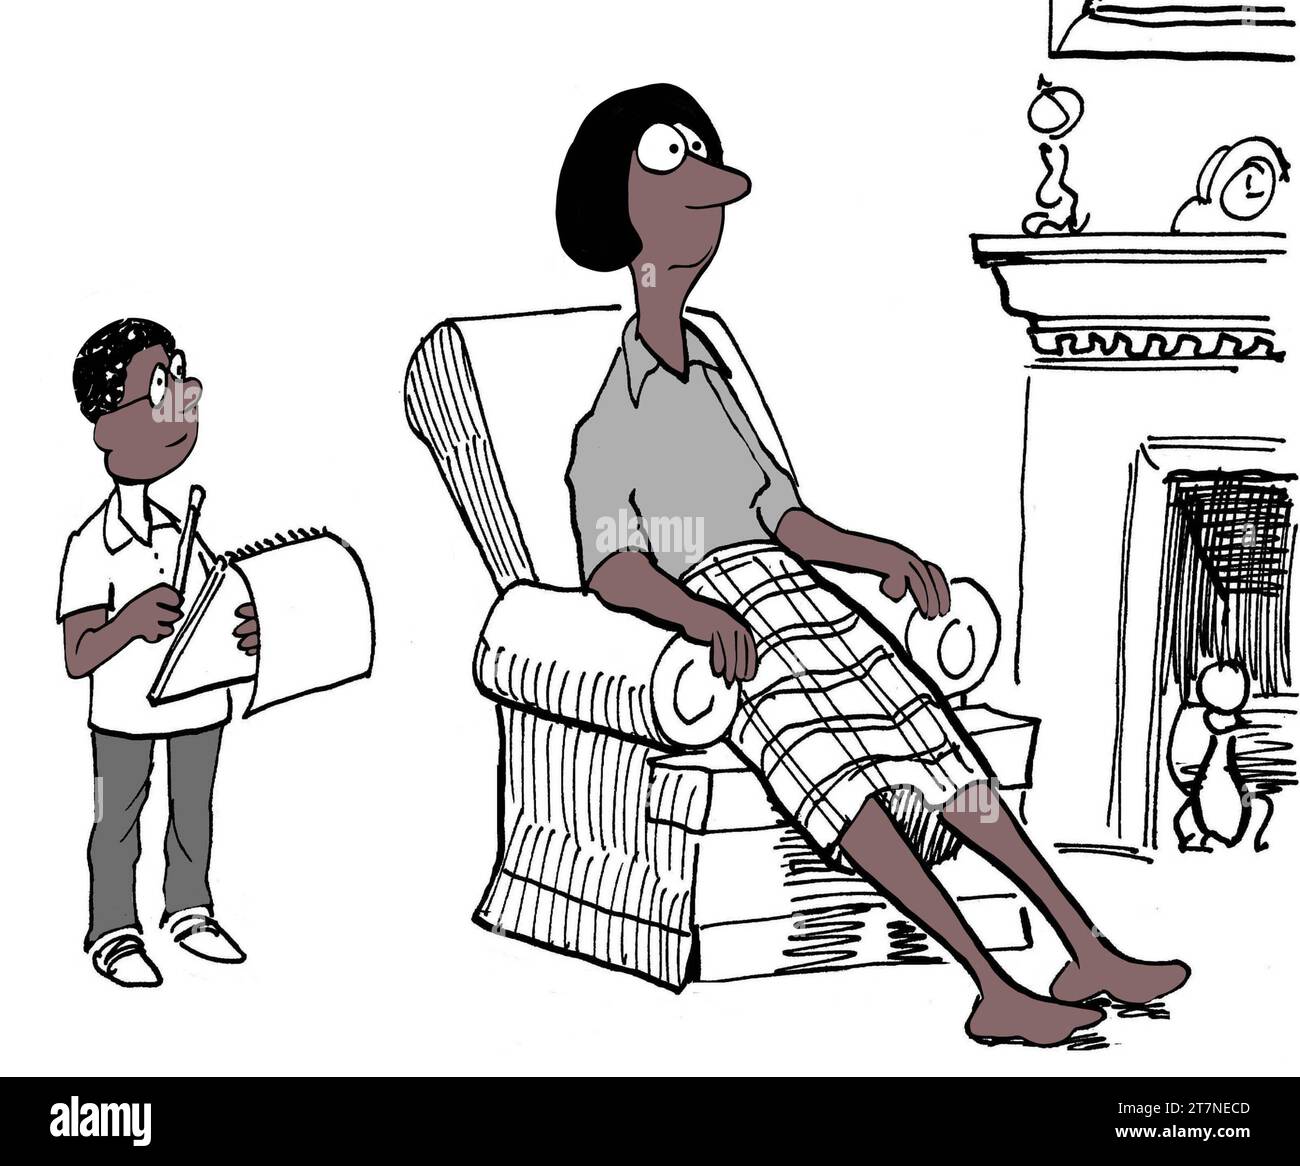 Dessin animé en couleur d'une mère noire et de son fils. Il lui demande de l'aide avec de nouvelles mathématiques. Banque D'Images